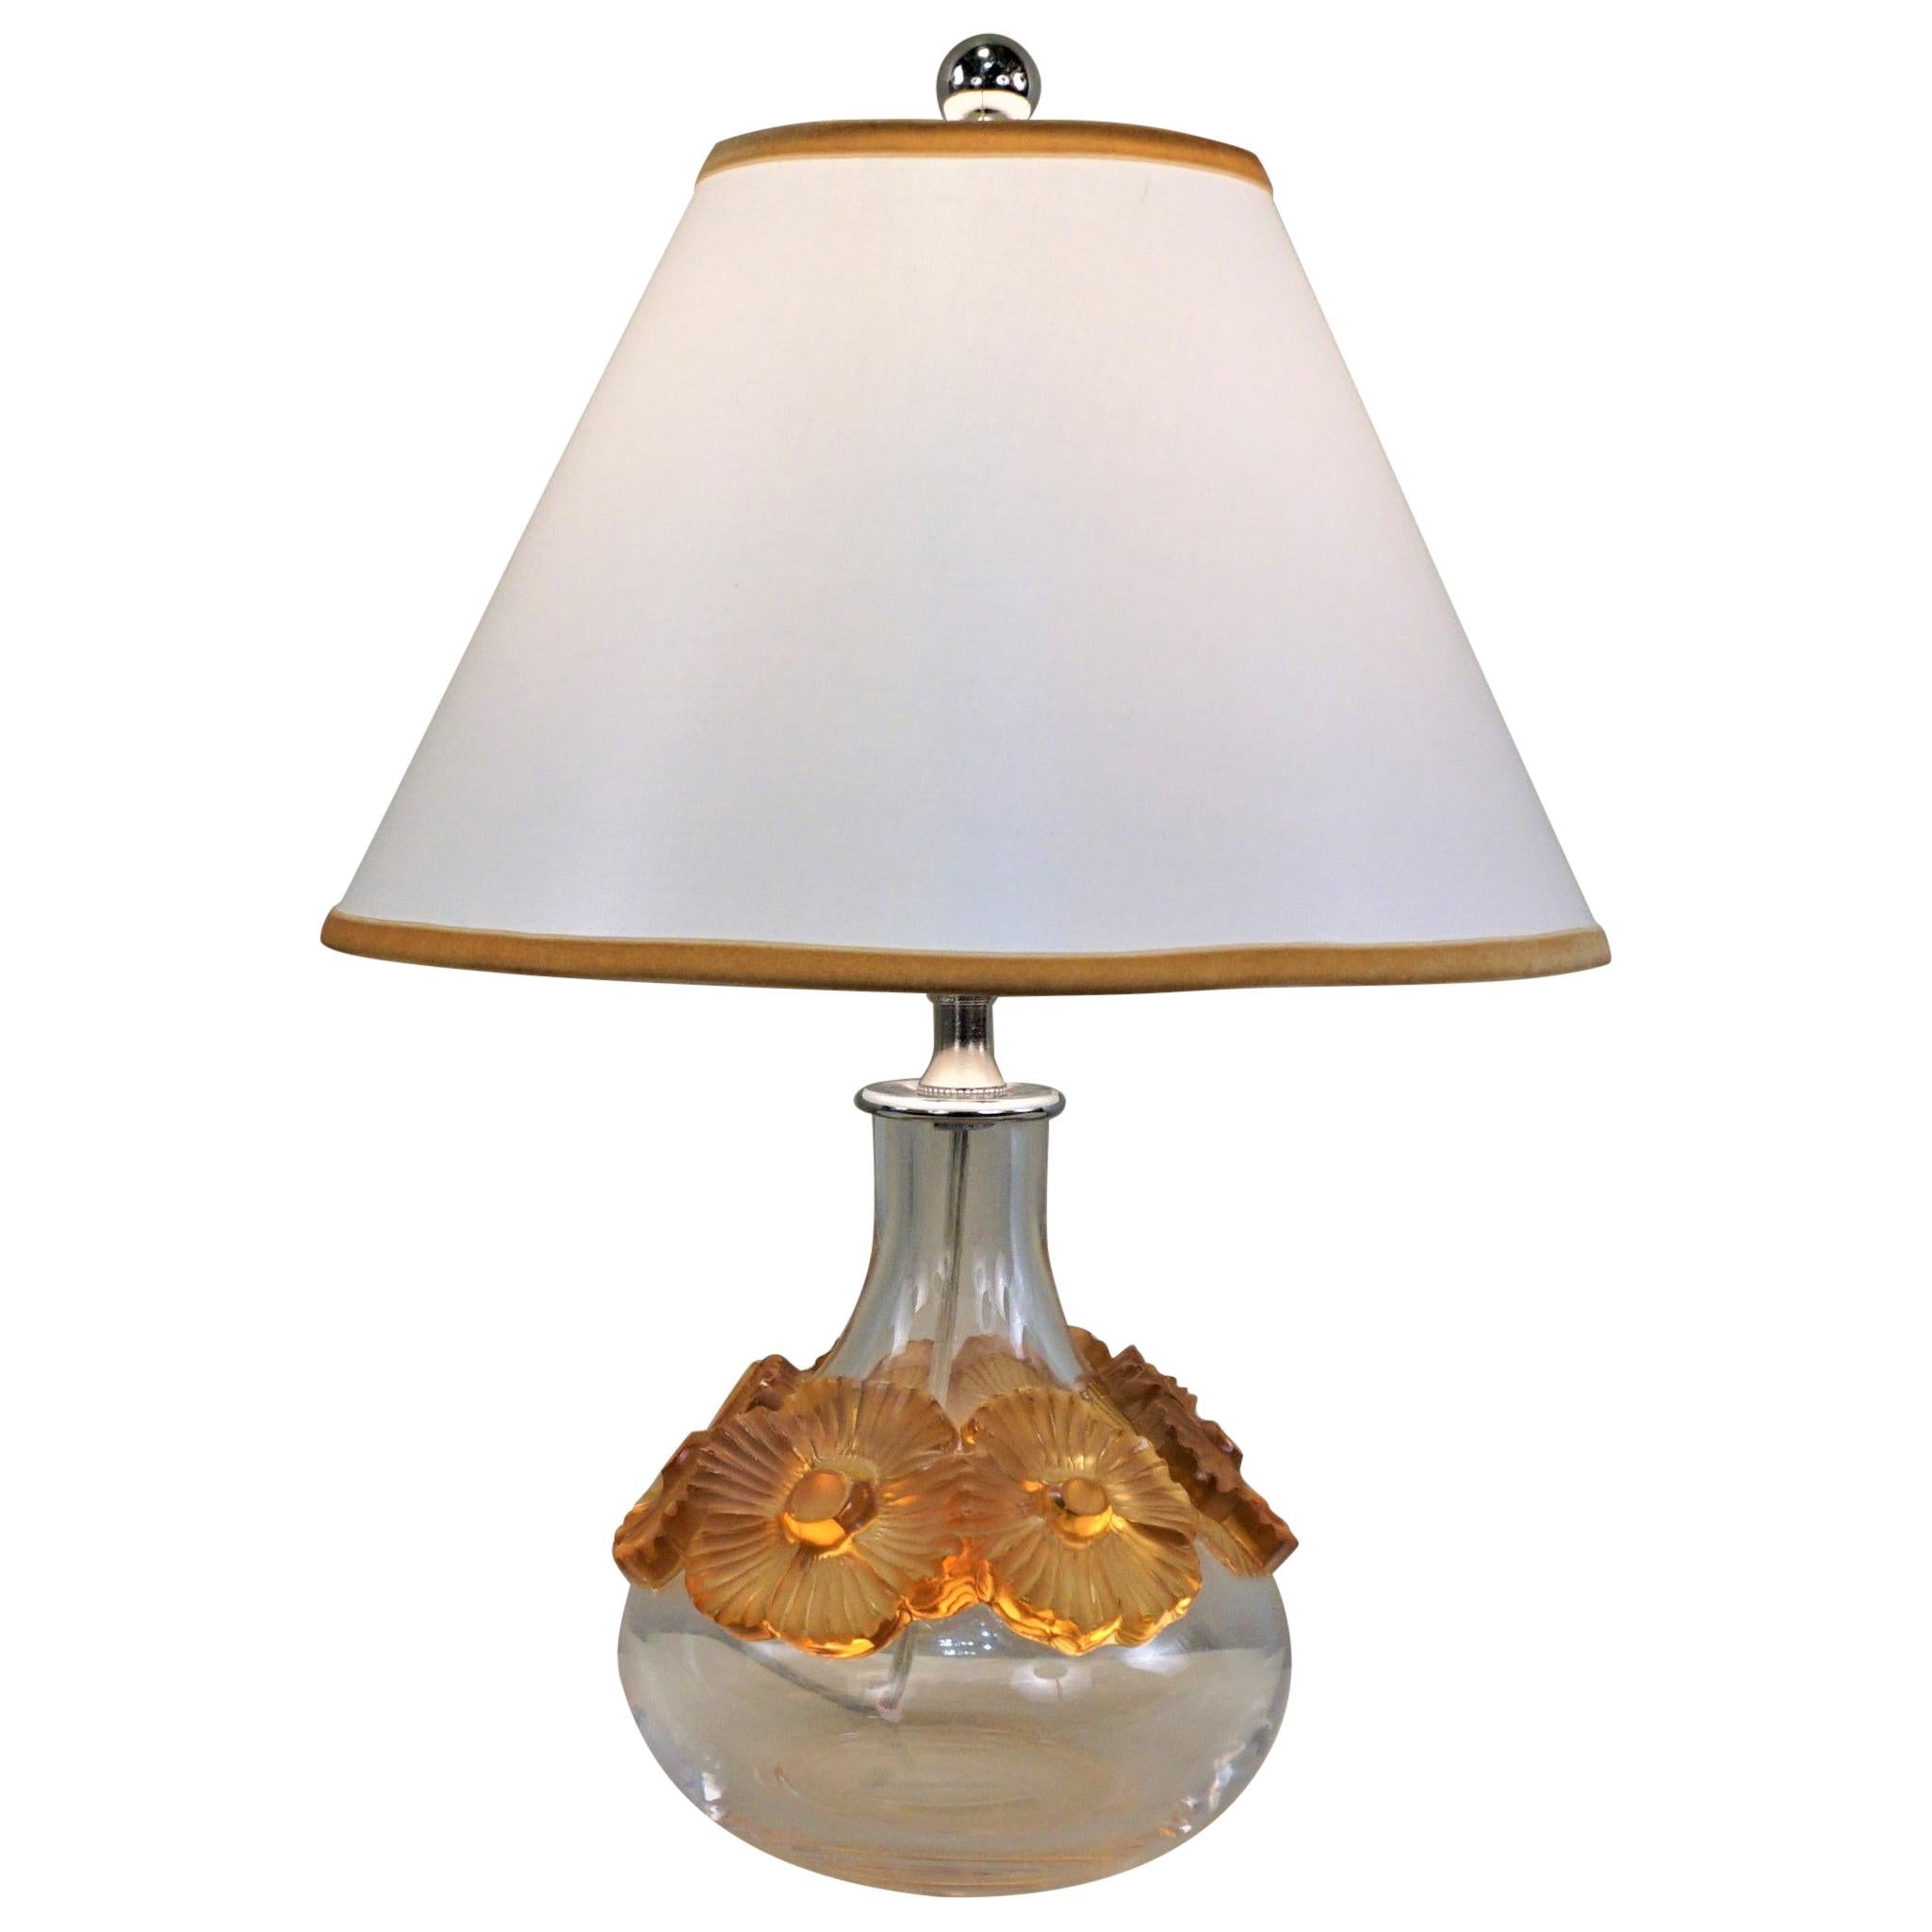 Lalique "La Fleur Au Lilas" Crystal Table Lamp